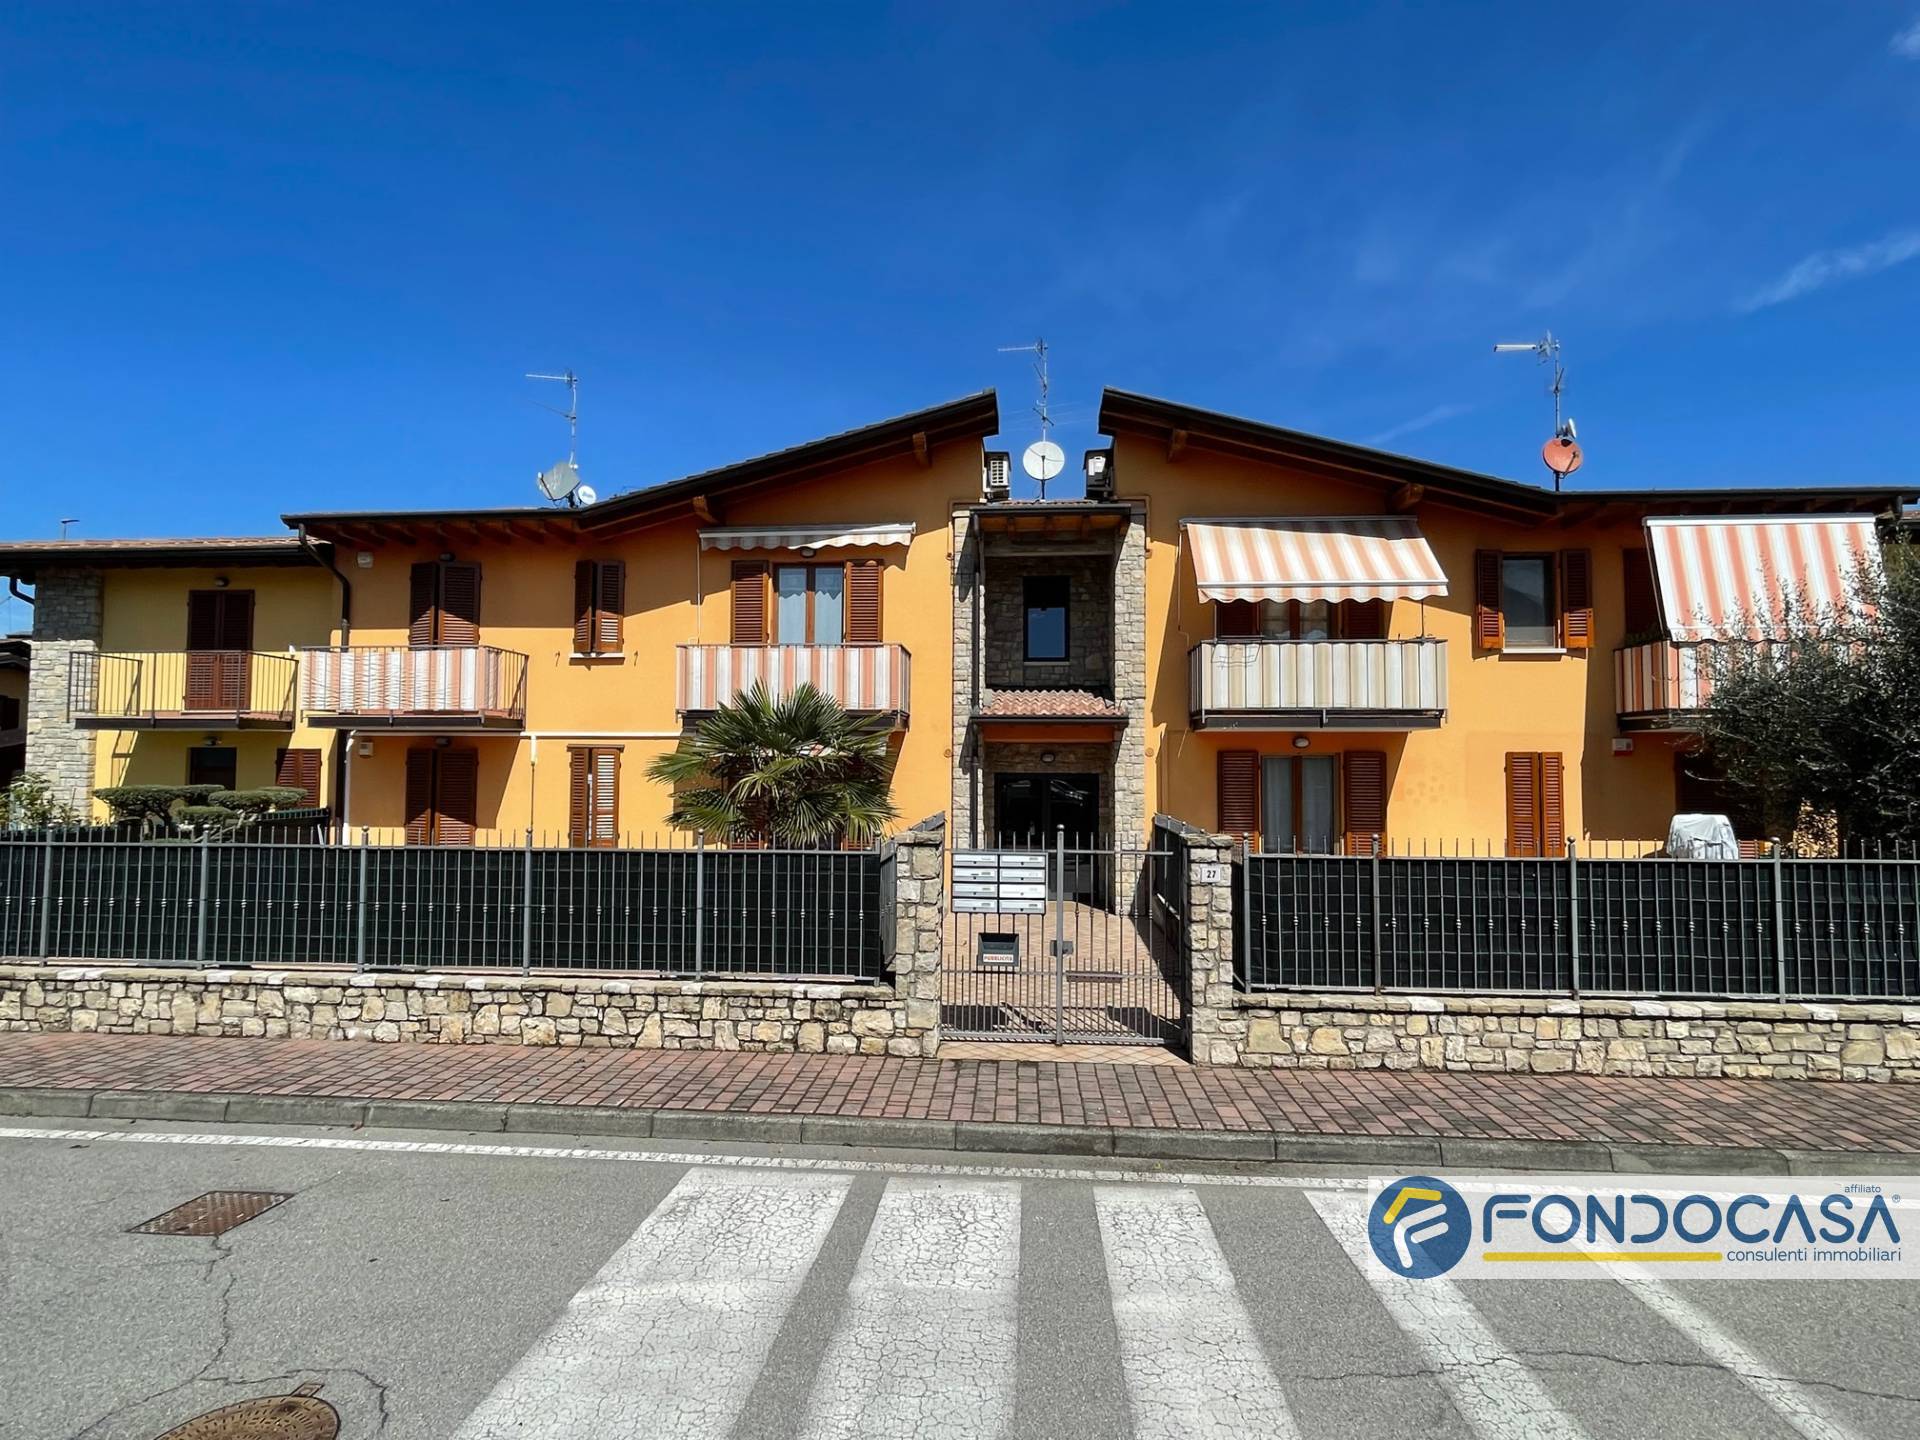 Appartamento in vendita a Credaro, 2 locali, prezzo € 95.000 | PortaleAgenzieImmobiliari.it